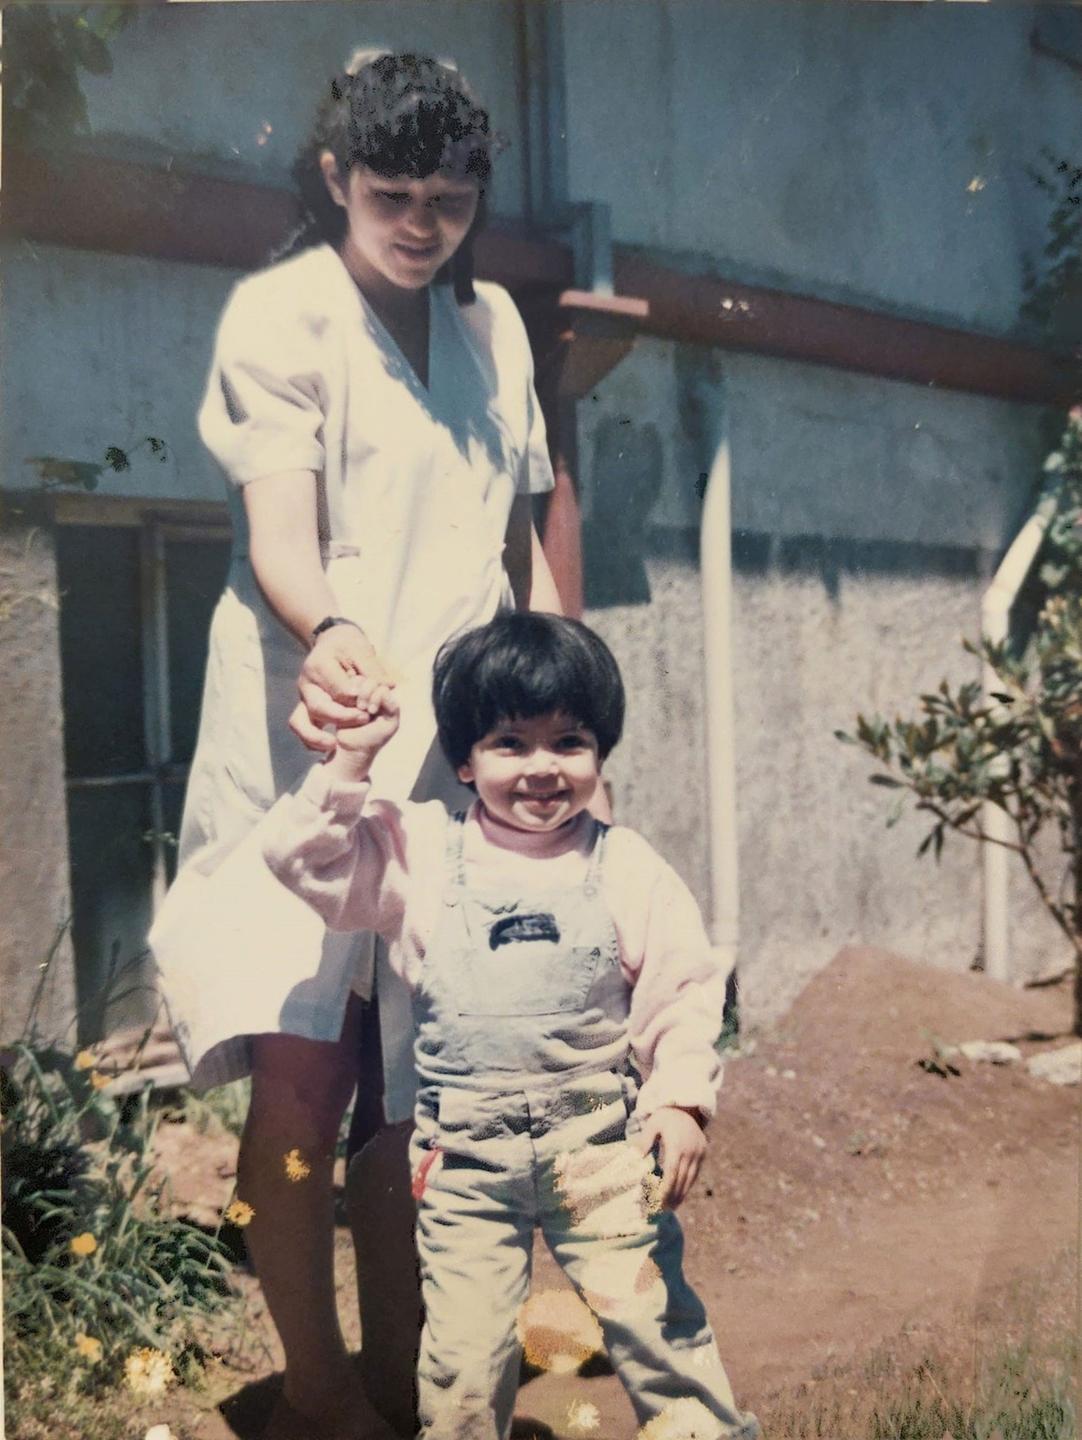 Ein altes Farbfoto zeigt ein kleines lachendes Mädchen an der Hand einer jungen Frau im weißen Kittel.